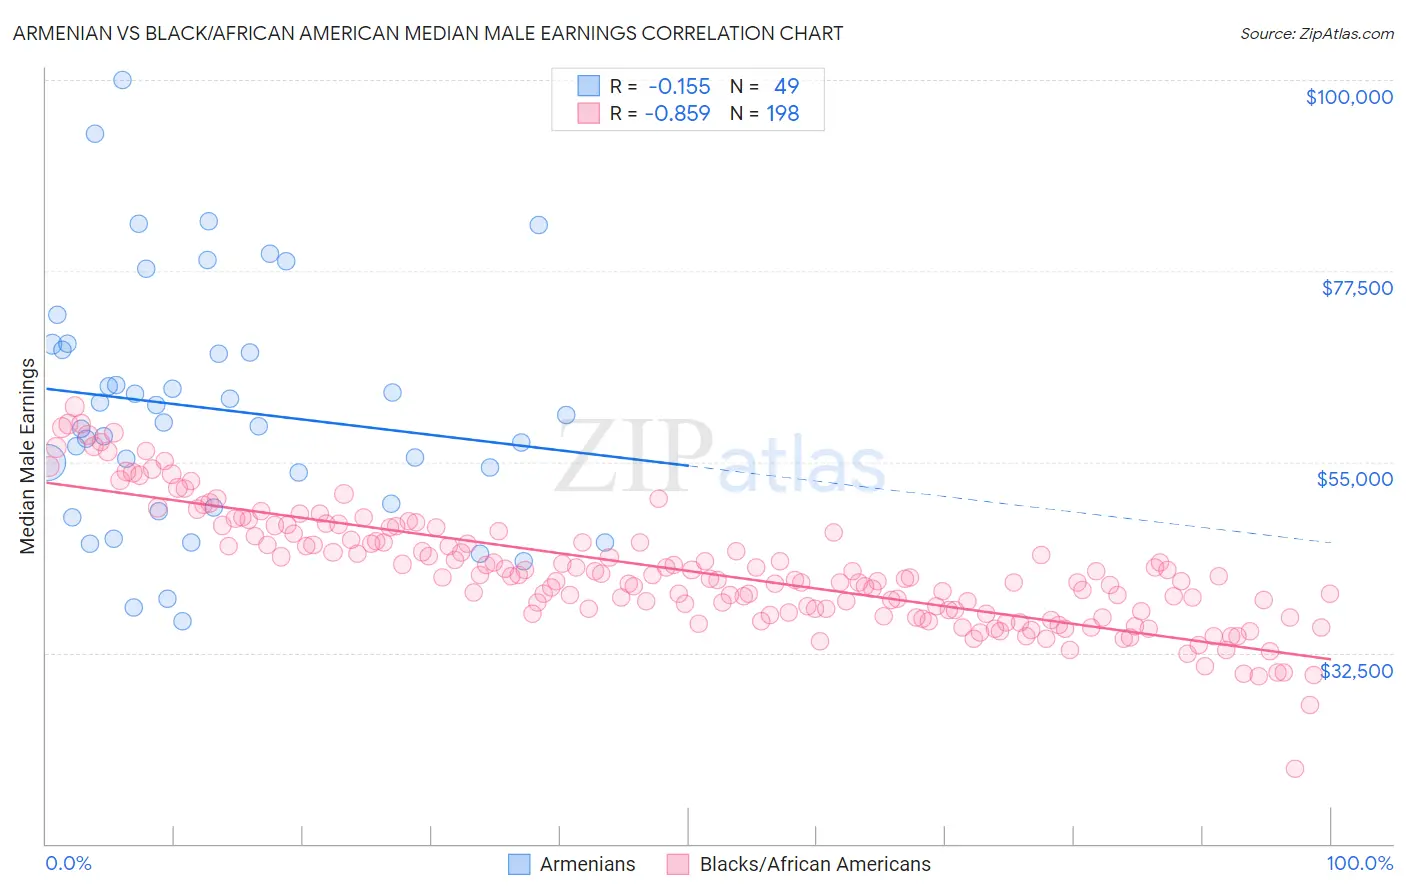 Armenian vs Black/African American Median Male Earnings